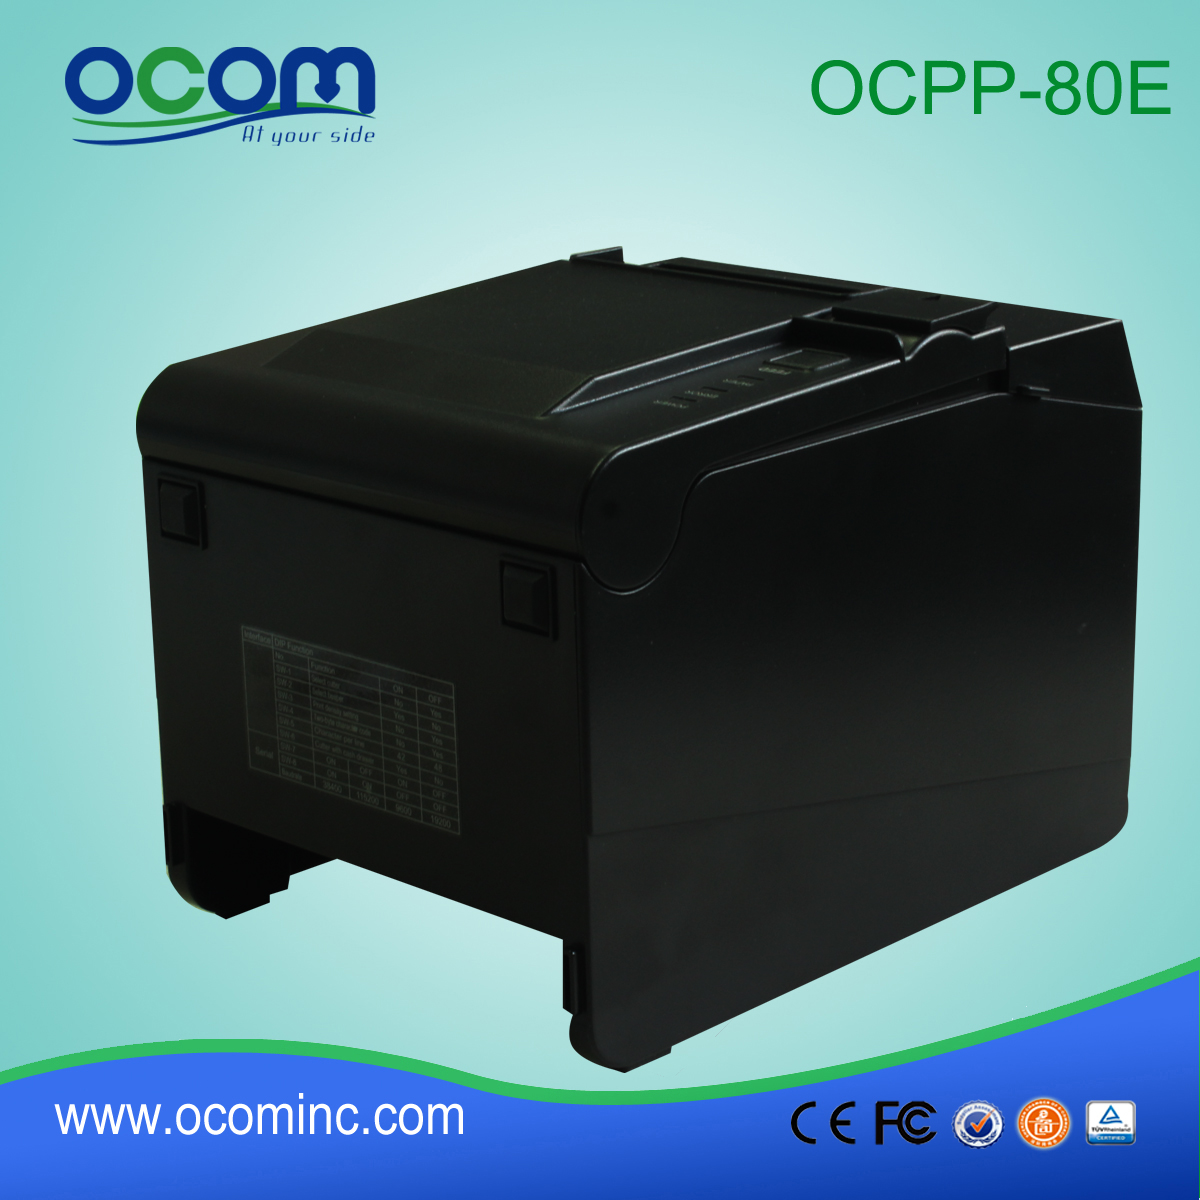 wysokiej jakości maszyny drukarskiej rachunek (OCPP-80E)